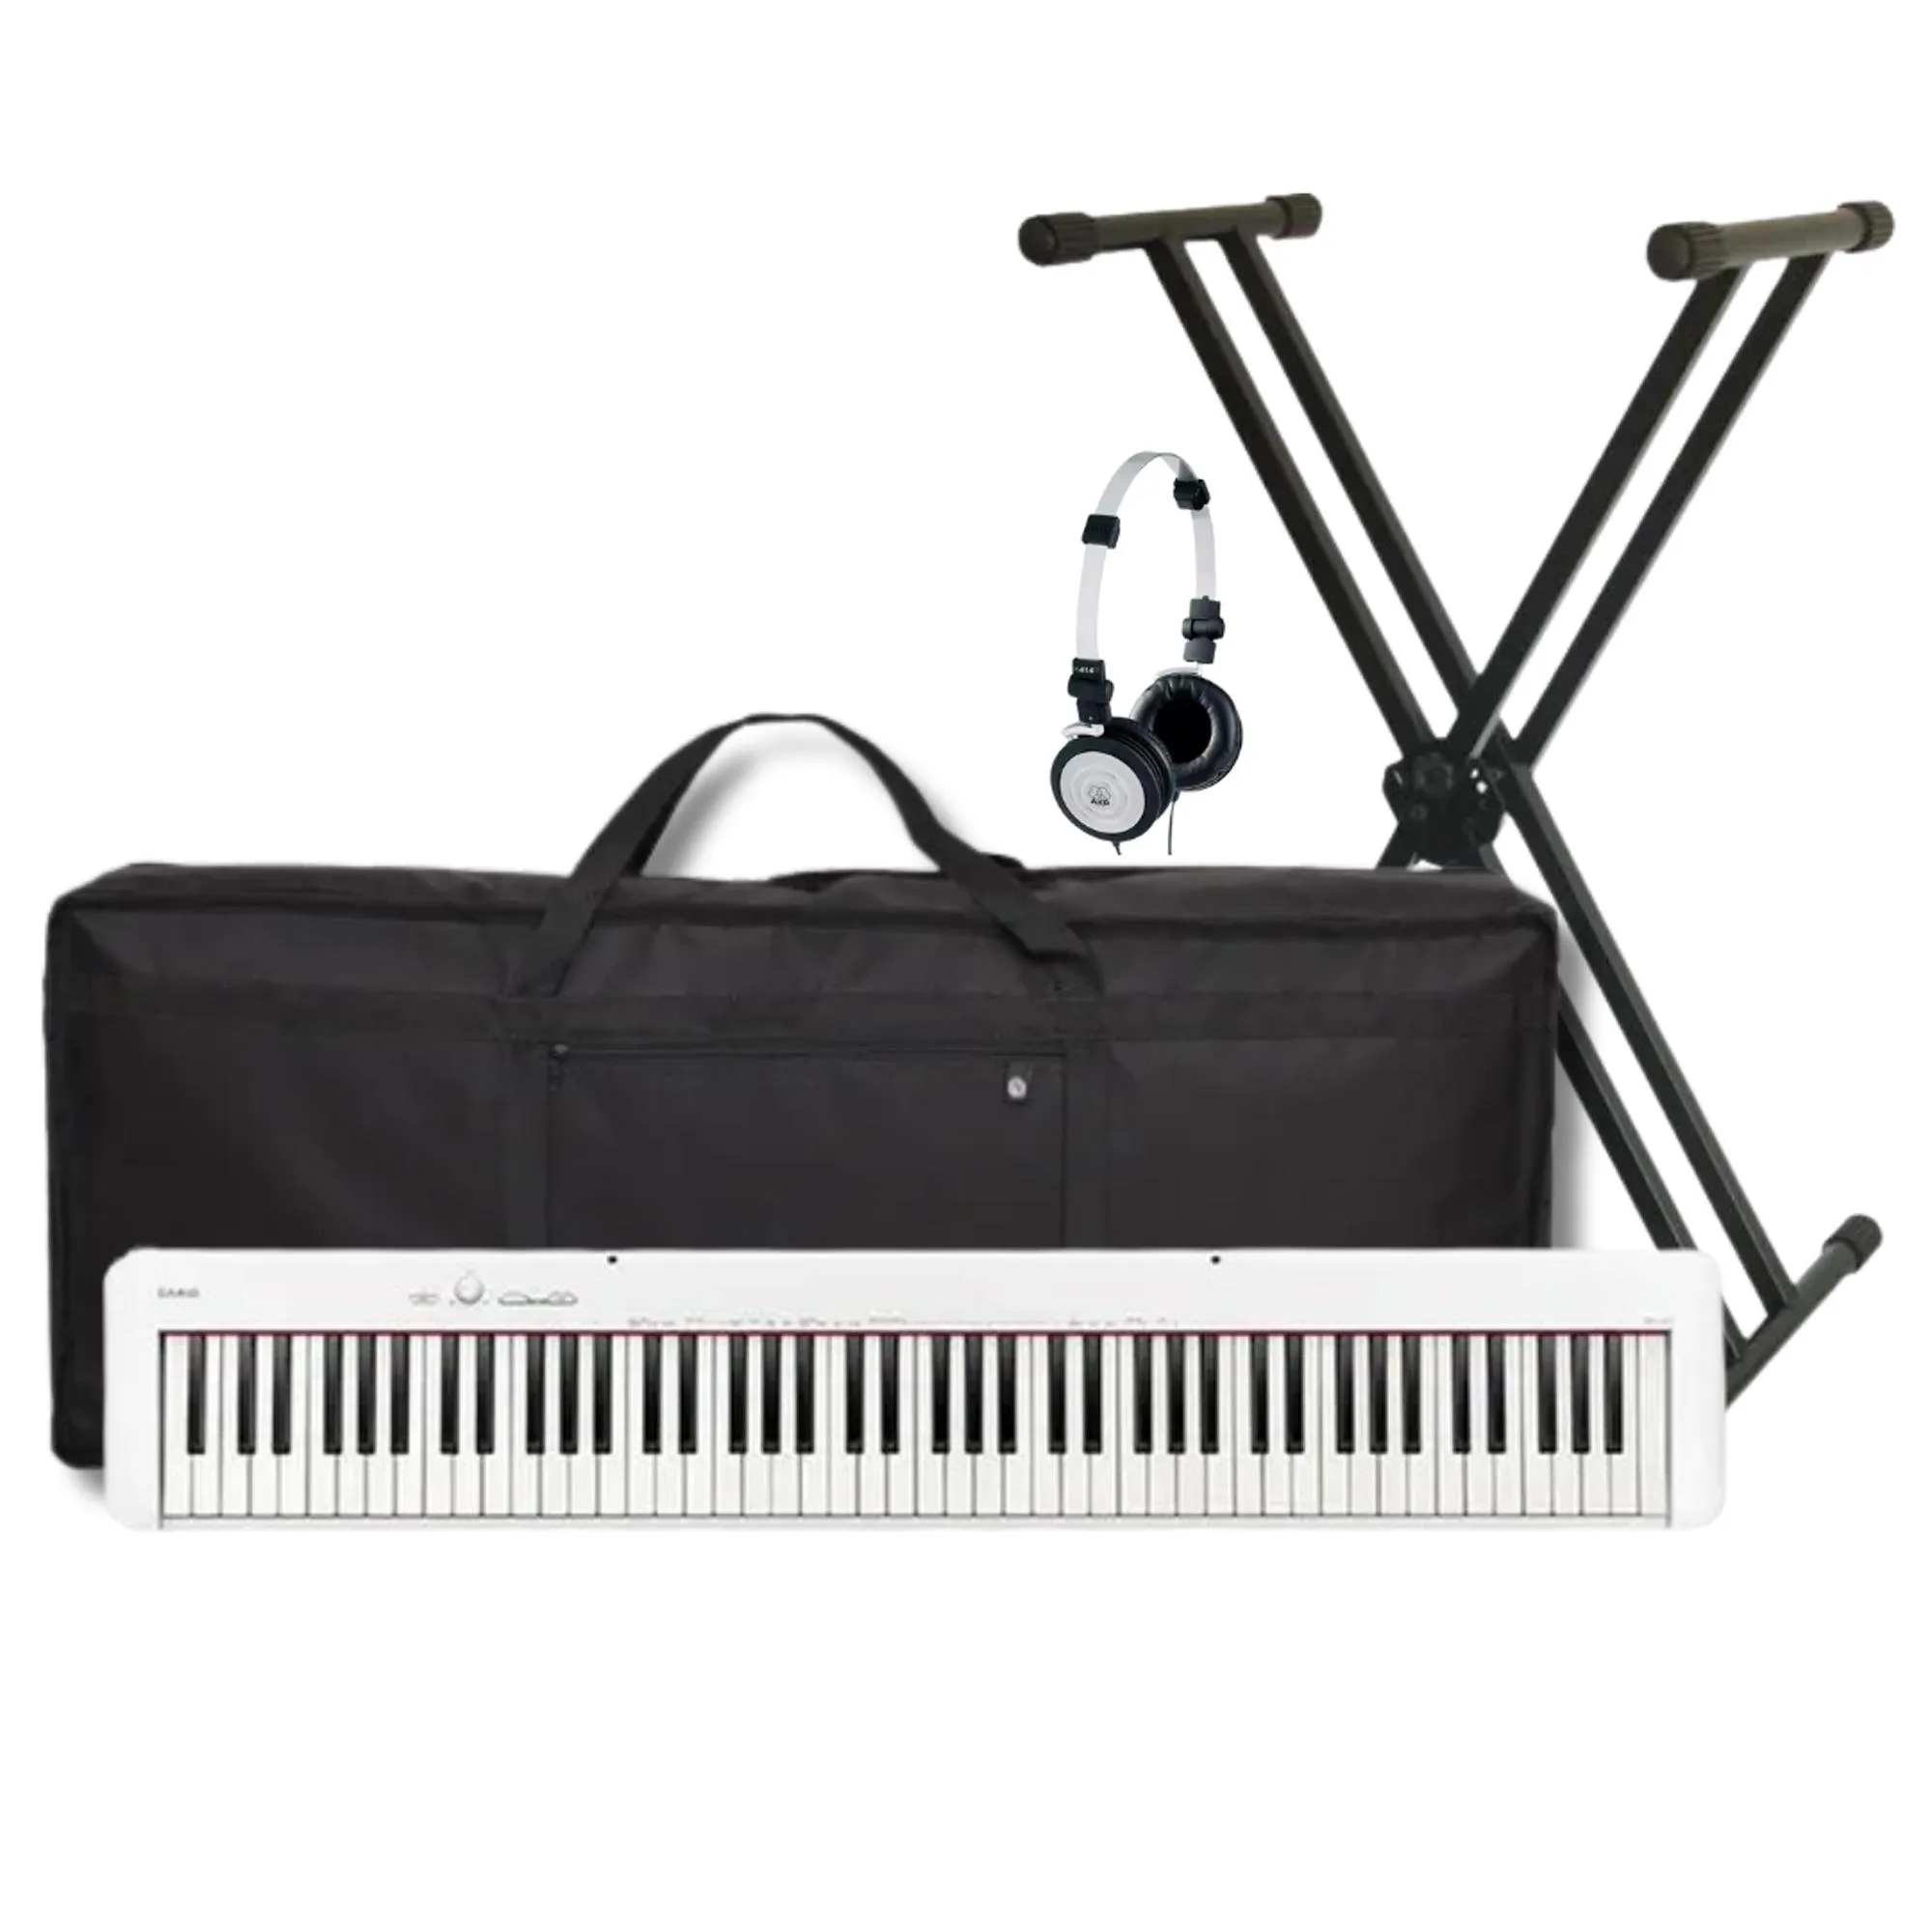 Kit Piano Digital Casio CDP-S110WE BR+ Suporte + Acessórios por 3.460,00 à vista no boleto/pix ou parcele em até 12x sem juros. Compre na loja Mundomax!